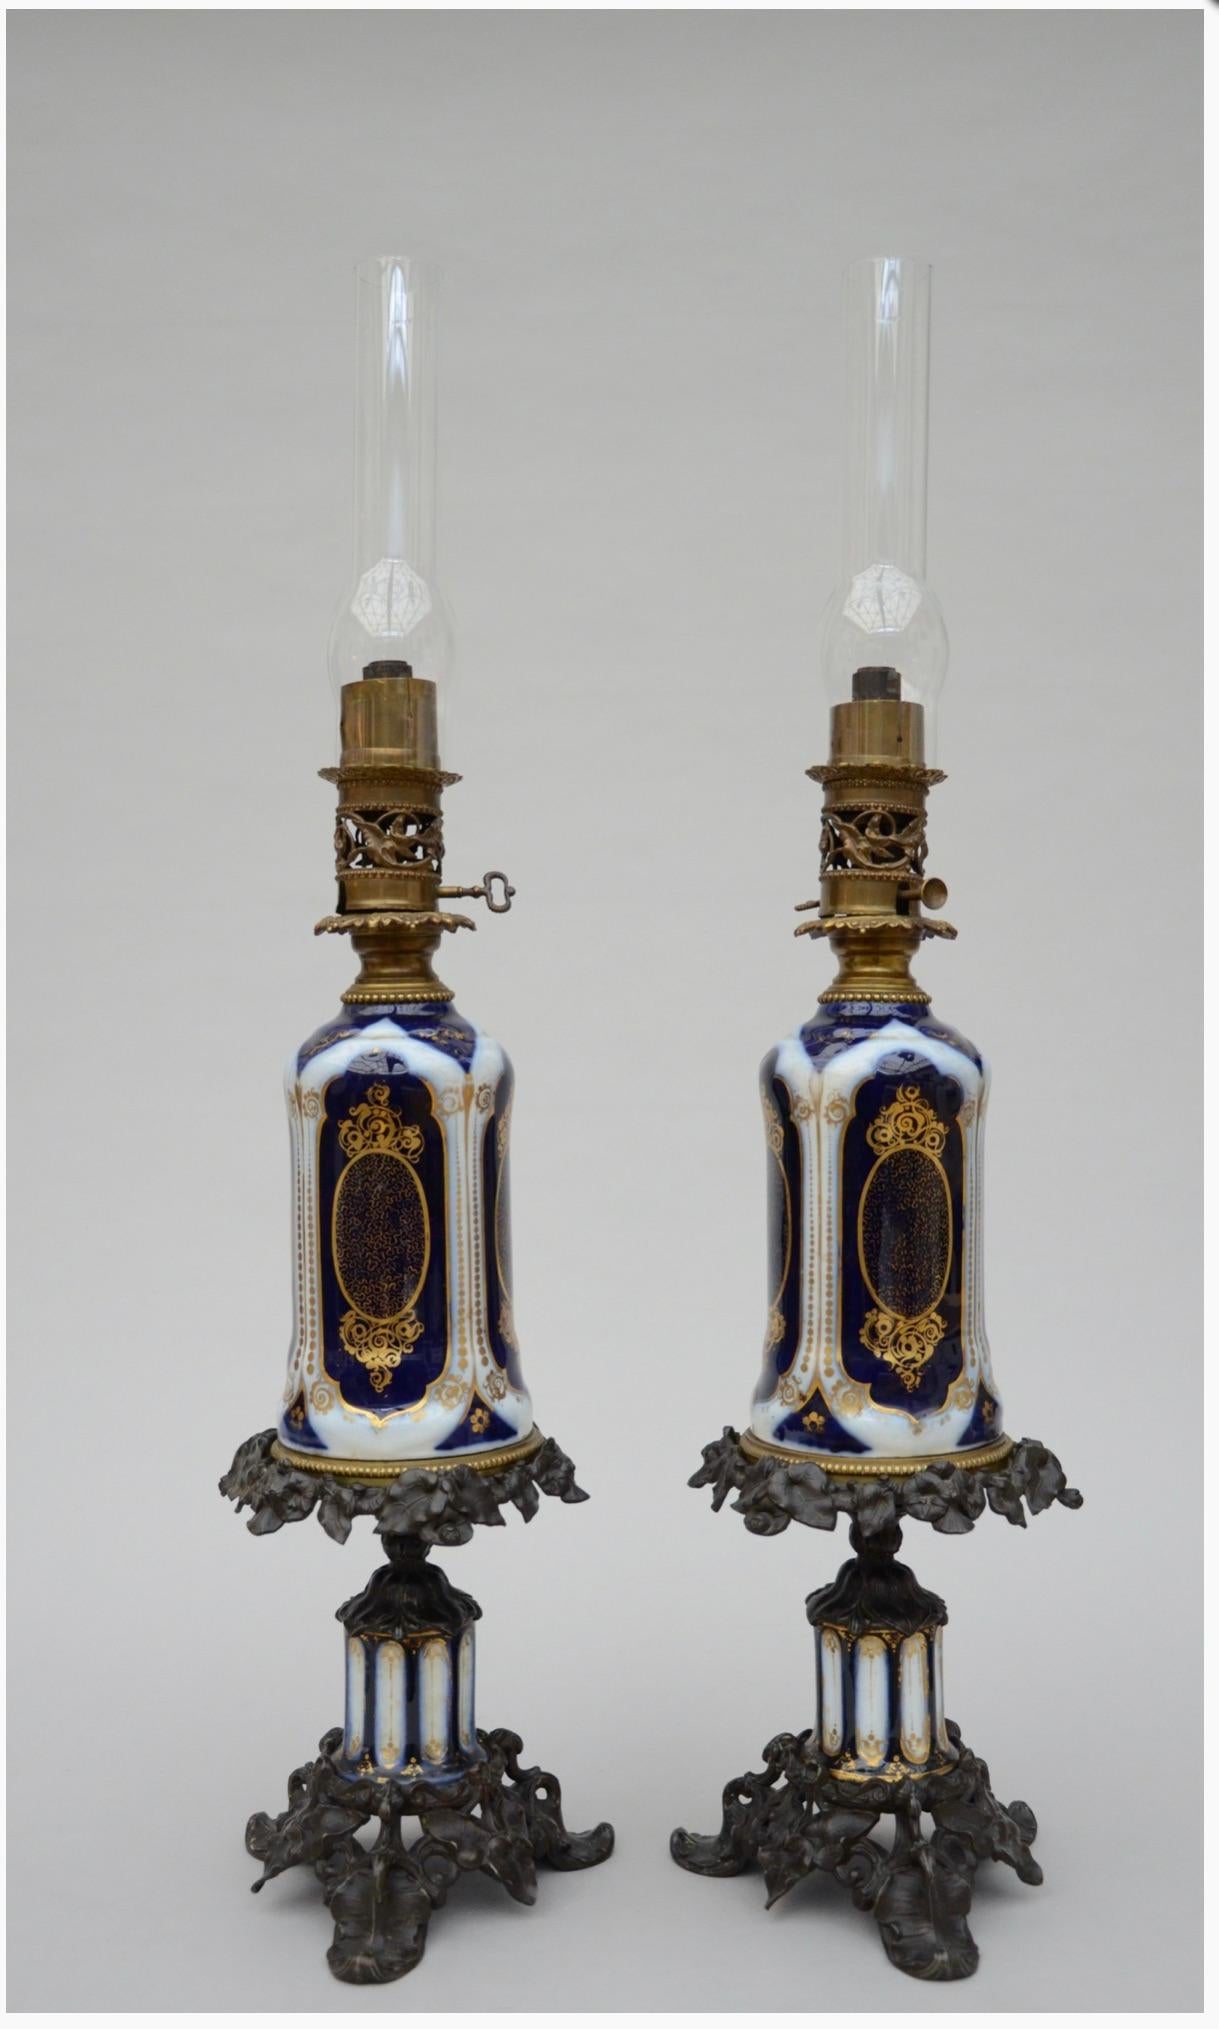 Ein Paar Bayeux-Öllampen mit Bronzebeschlägen.

Ein Paar antike französische Öllampen aus handbemaltem Bayeux-Porzellan.
Die verwendeten Farben sind typisches Bayeux-Porzellan.

Höhe mit Glas 33,8